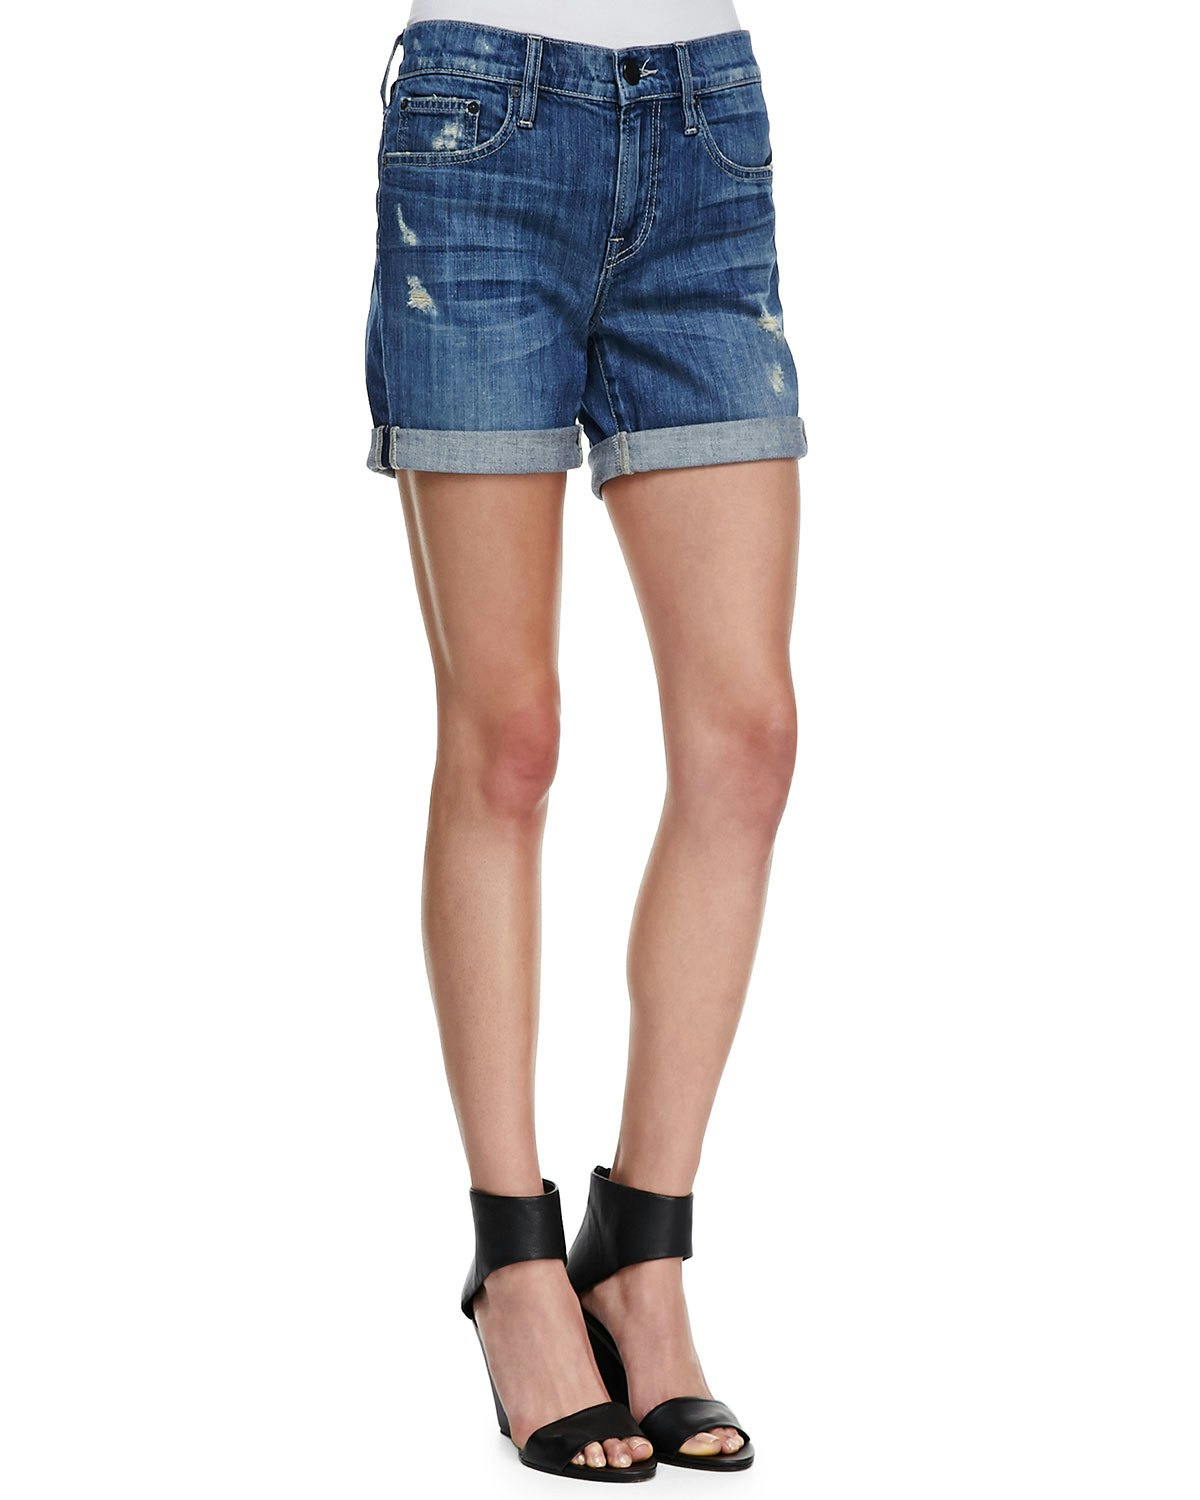 denim shorts for skinny legs